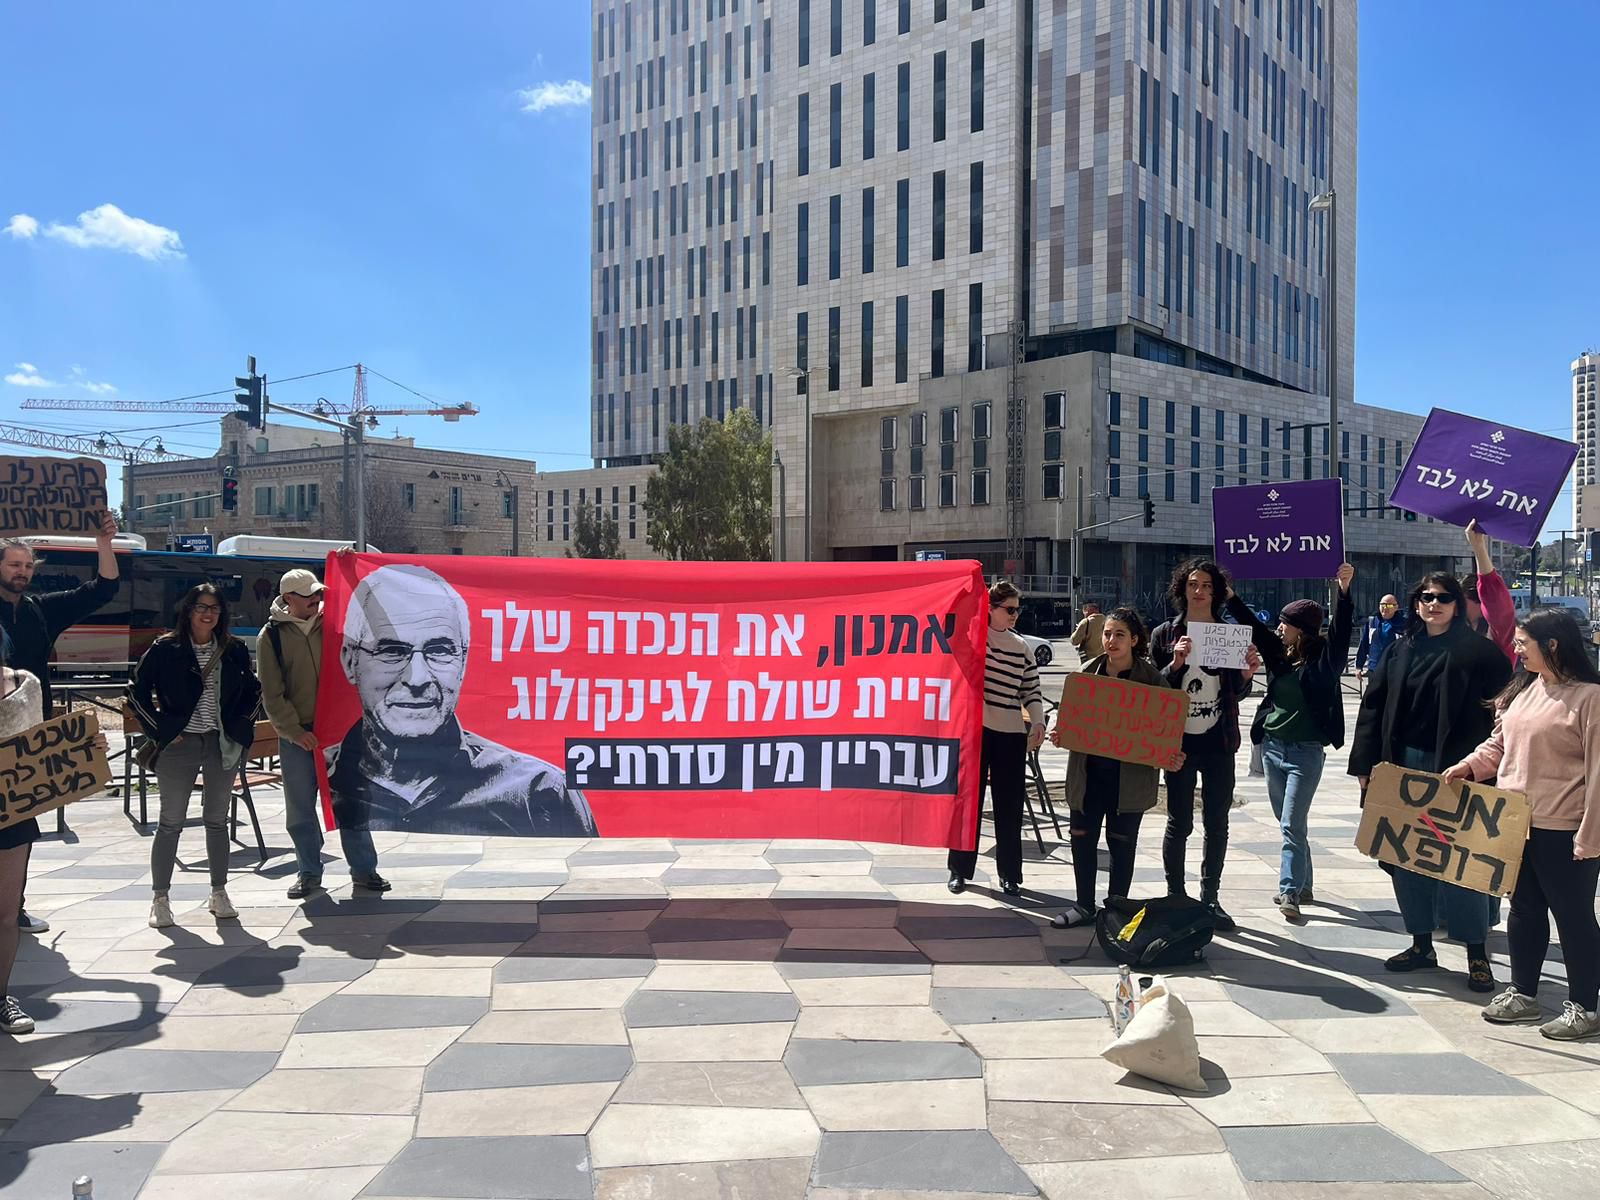 מפגינות מחוץ למשרד הבריאות בירושלים, נגד החזרתו של בני שכטר, גניקולוג שהורשע בעבירות מין במטופלות(צילום: סתיו ארנון, הודיה מויאל)